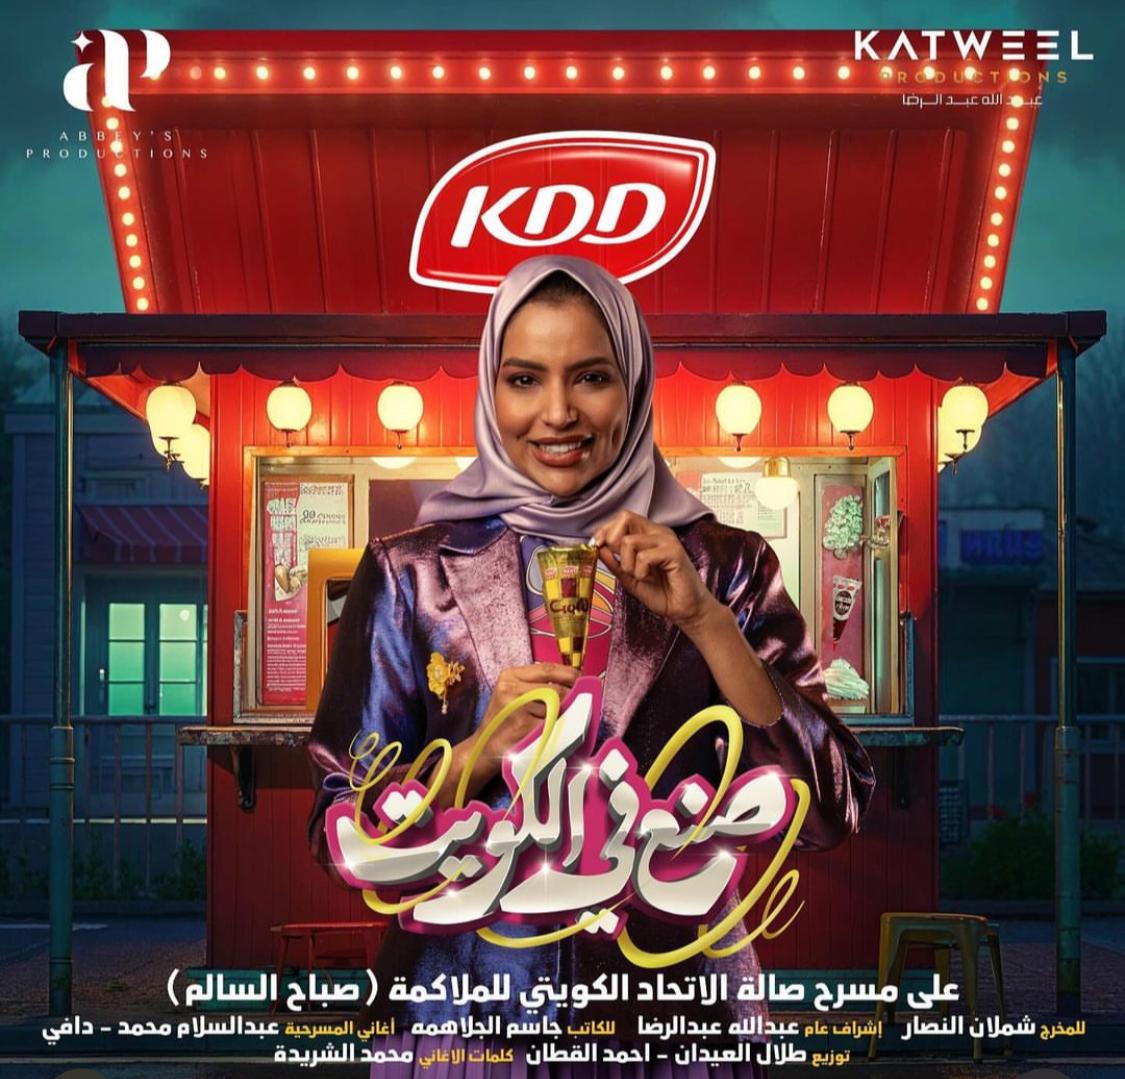 آلاء الهندي - مسرحية صنع في الكويت